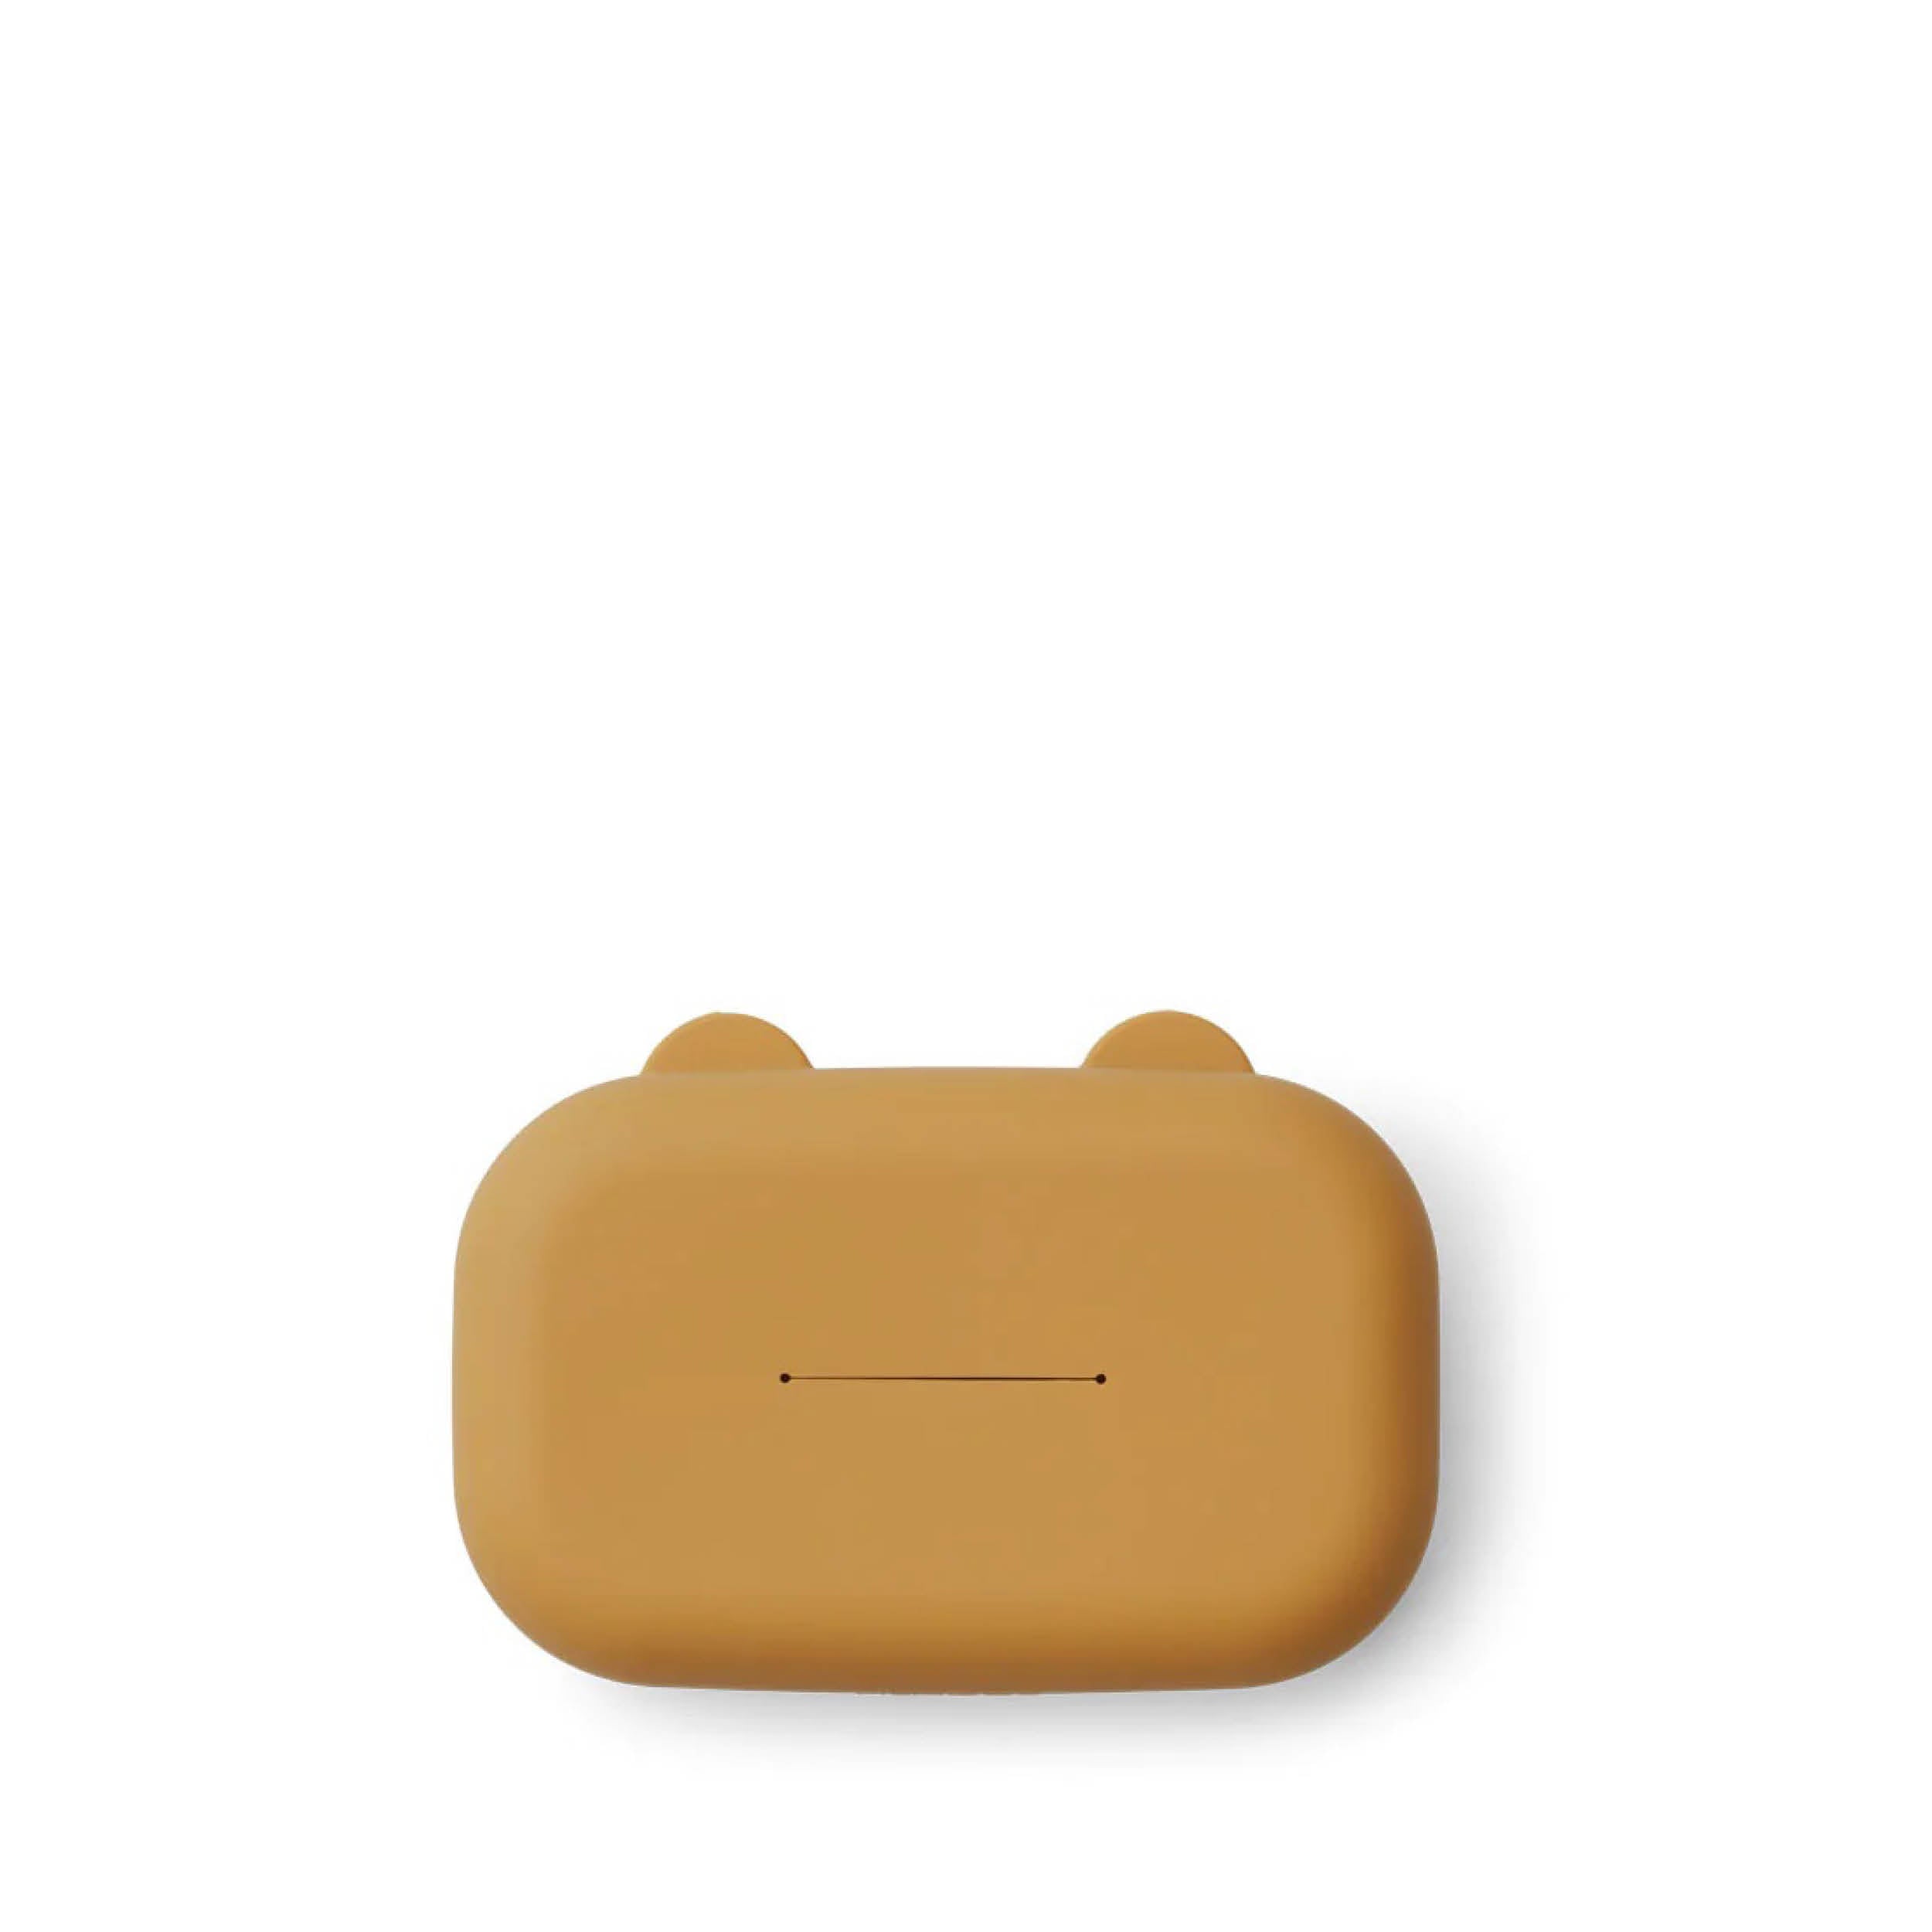 Wickeltisch - Babyzimmer - Feuchttuchbehälter - Behälter für Feuchttücher aus Silikon Emi in golden caramel von Liewood bei kinder und konsorten Babygeschäft